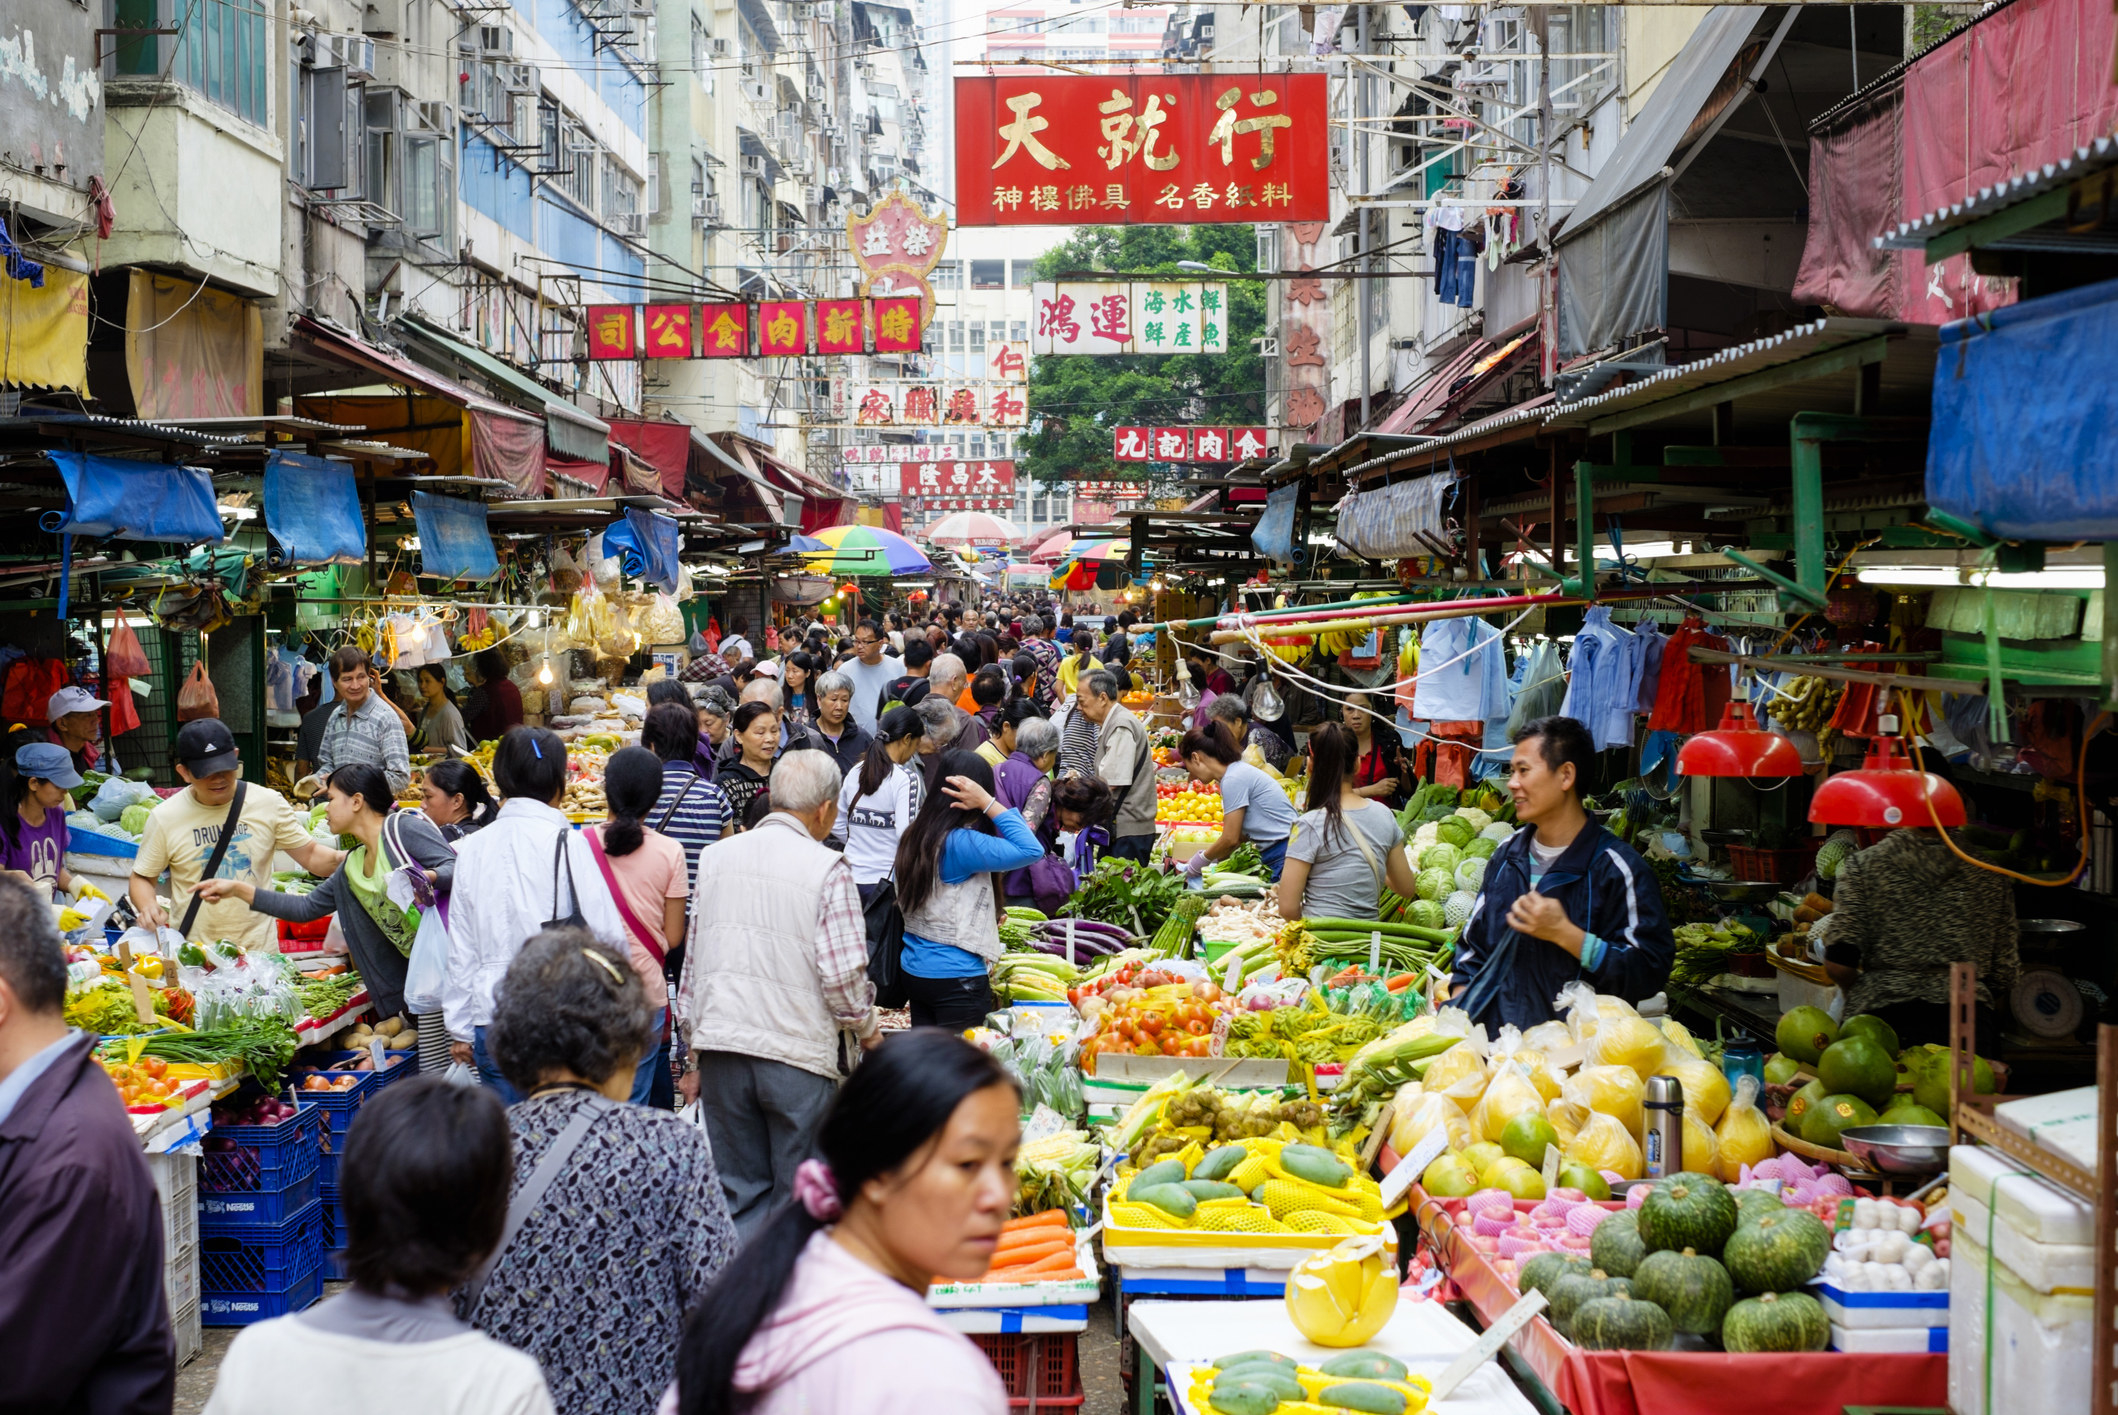 A street market in Hong Kong.